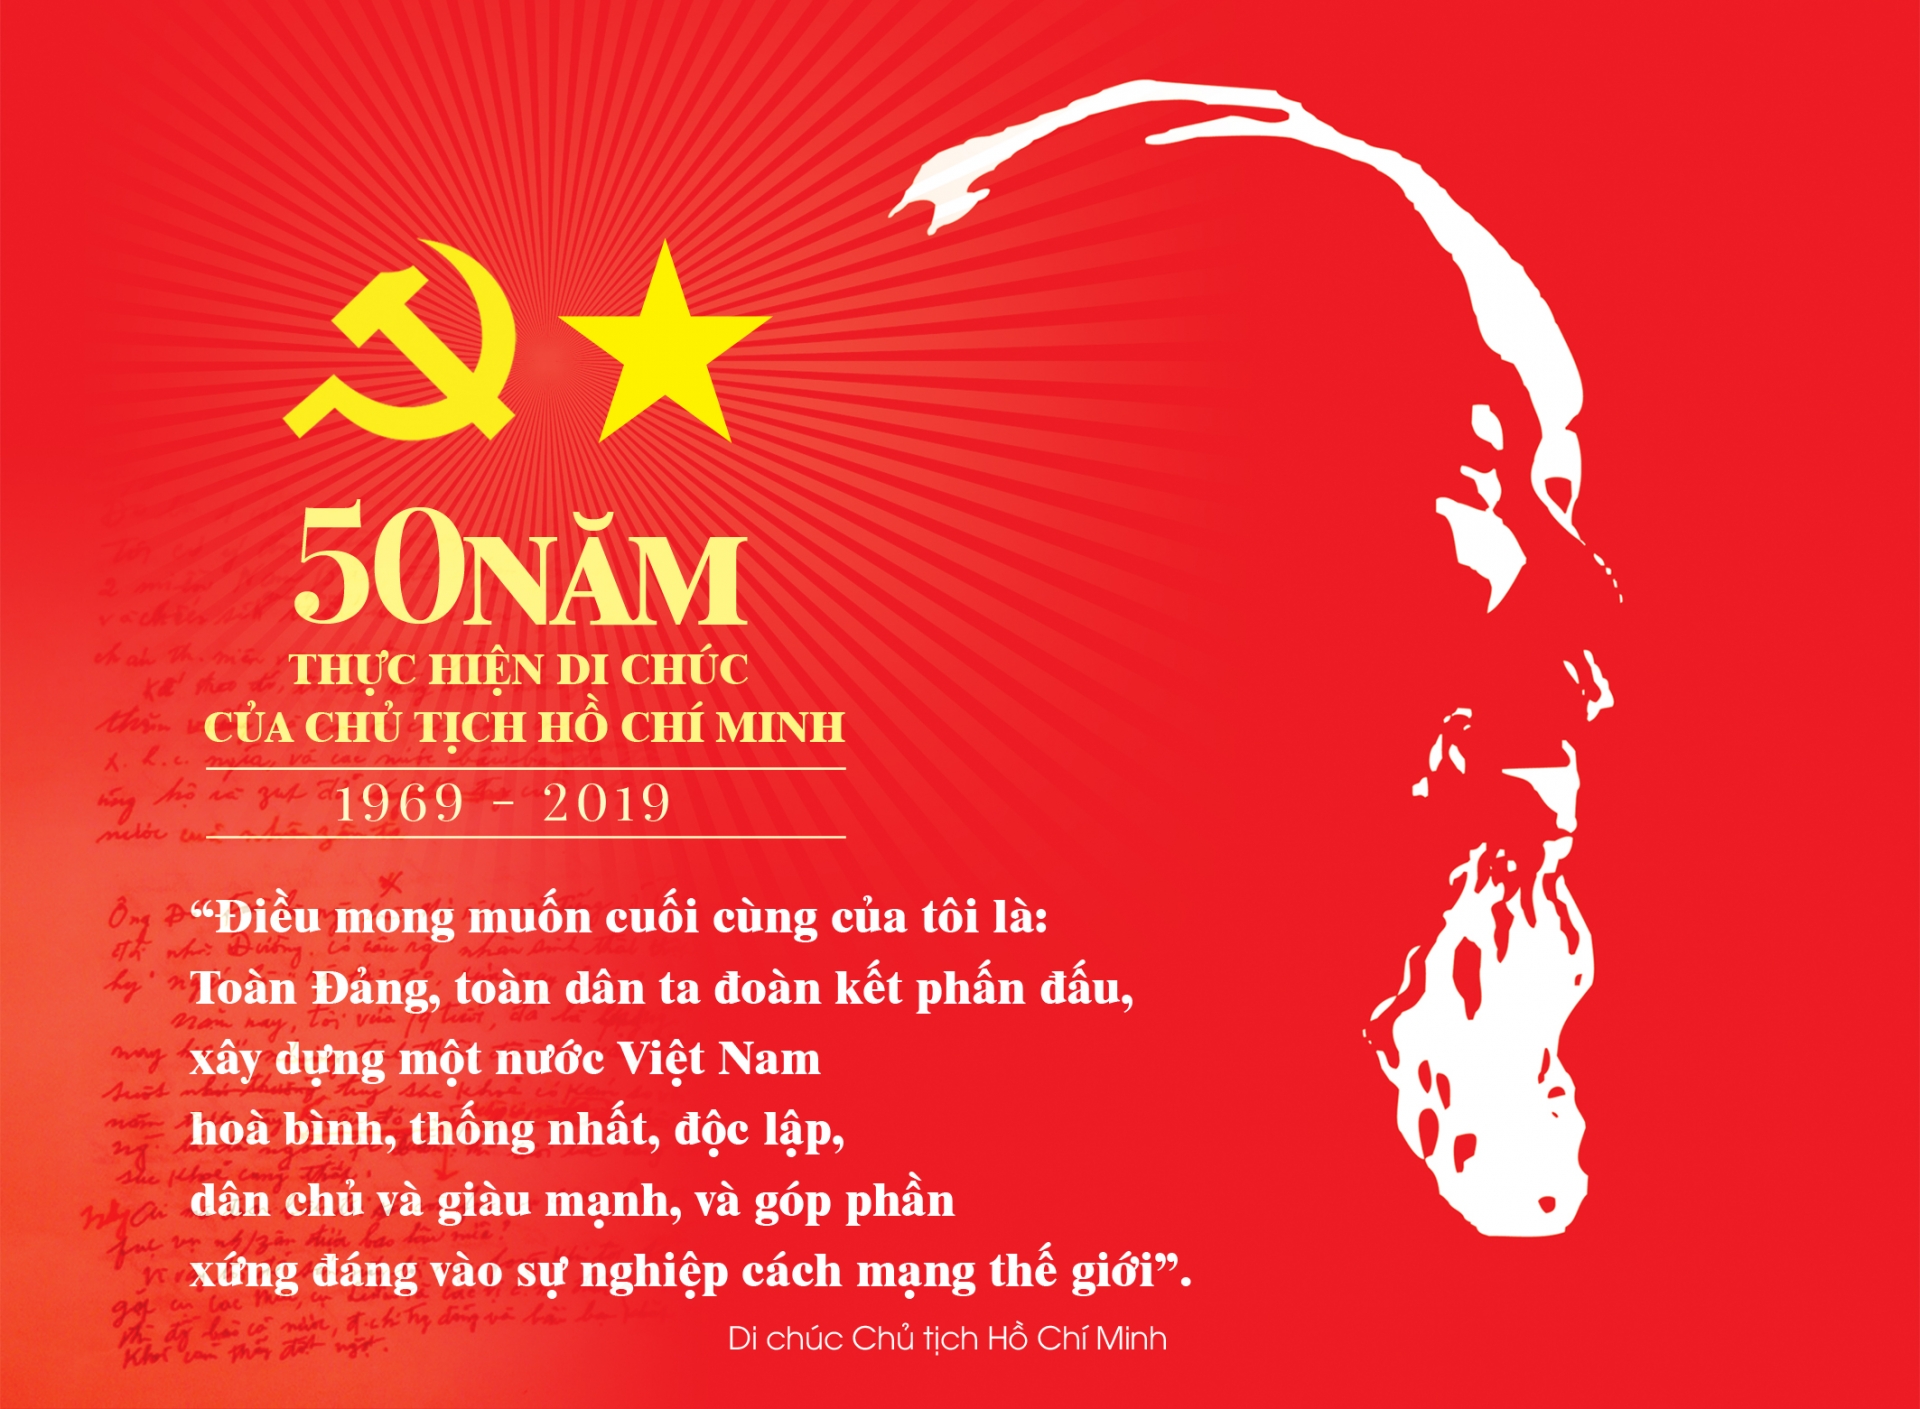 Di chúc và những di sản của Chủ tịch Hồ Chí Minh để lại mãi mãi là động lực to lớn, là ngọn hải đăng dẫn dắt Đảng ta, dân tộc ta trên con đường đi tới tương lai tươi sáng